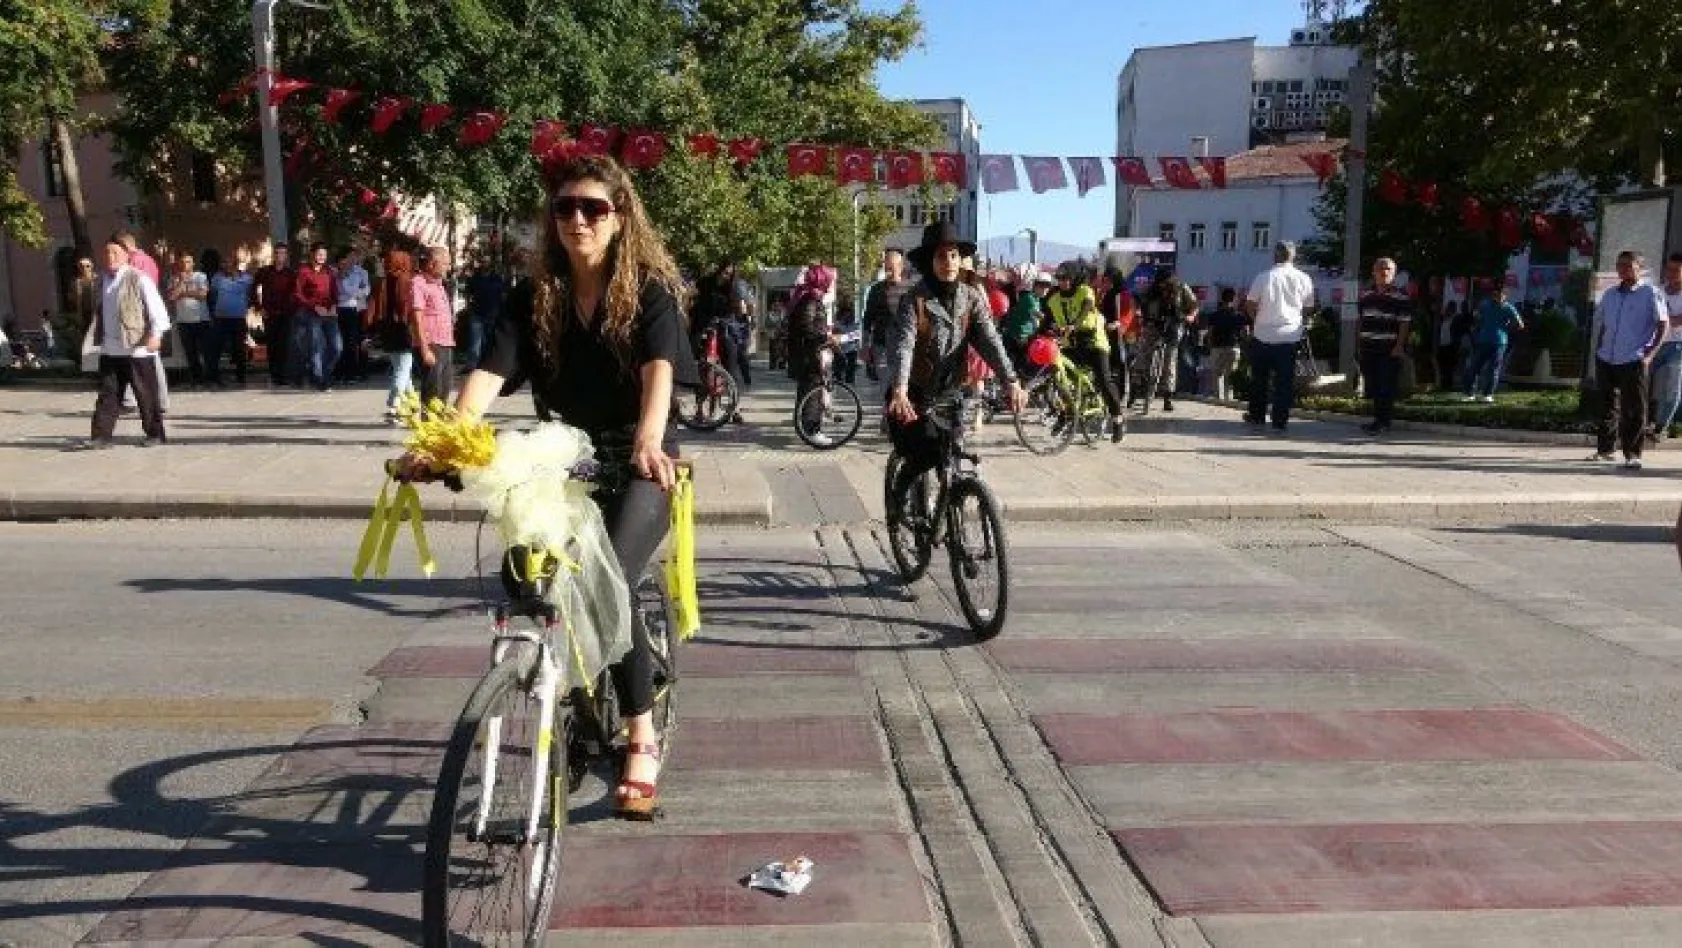 Elazığ'da süslü kadınlar bisiklet turu